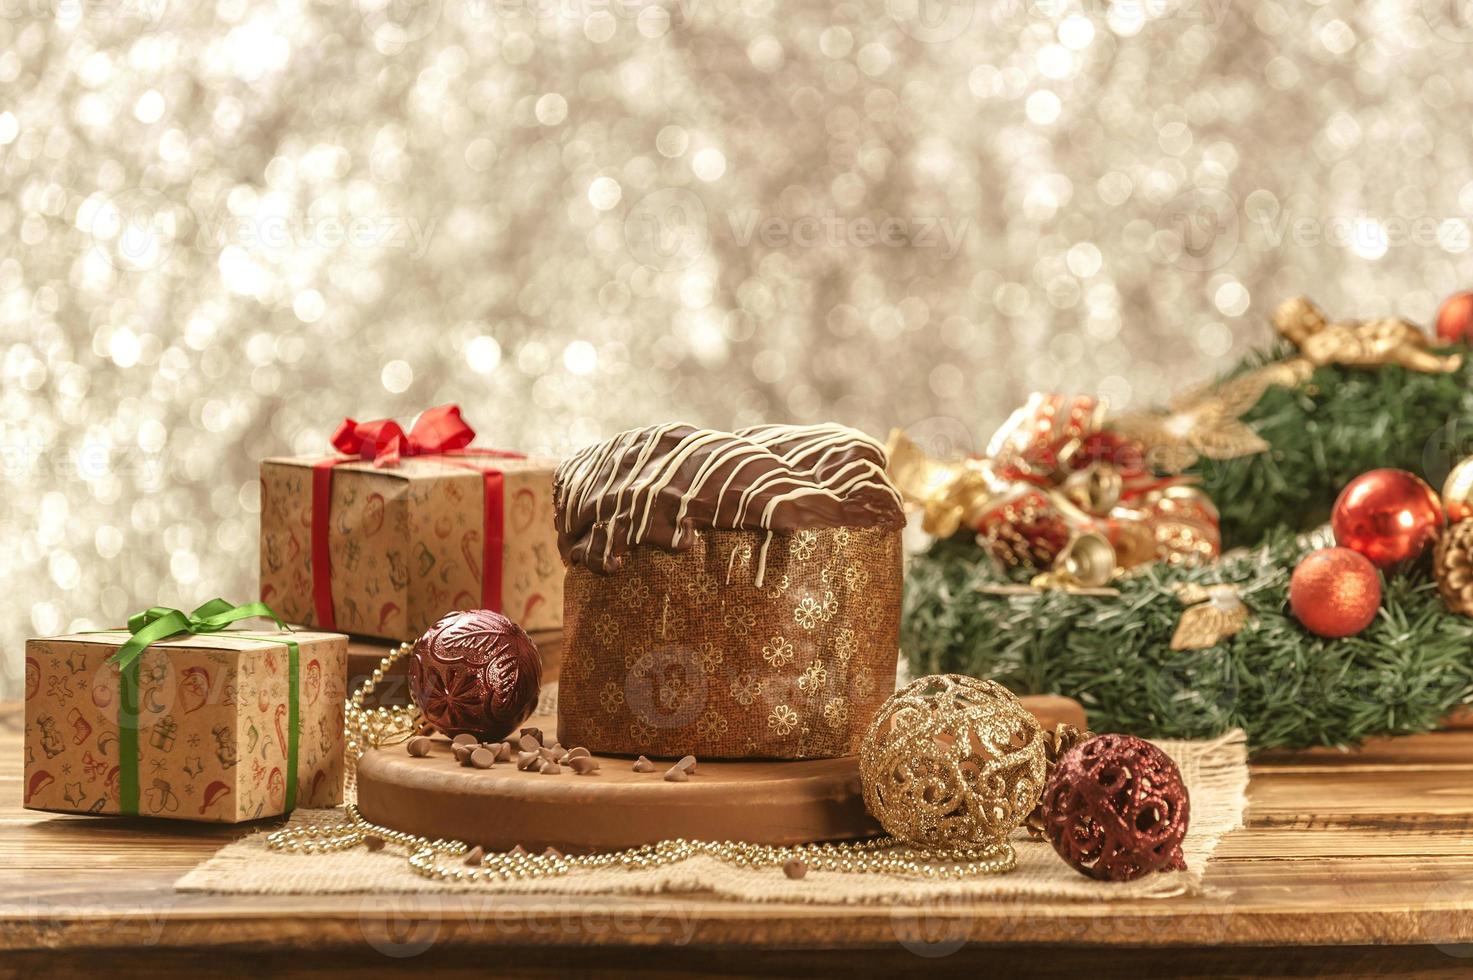 choklad panettone på träbord med juldekorationer foto